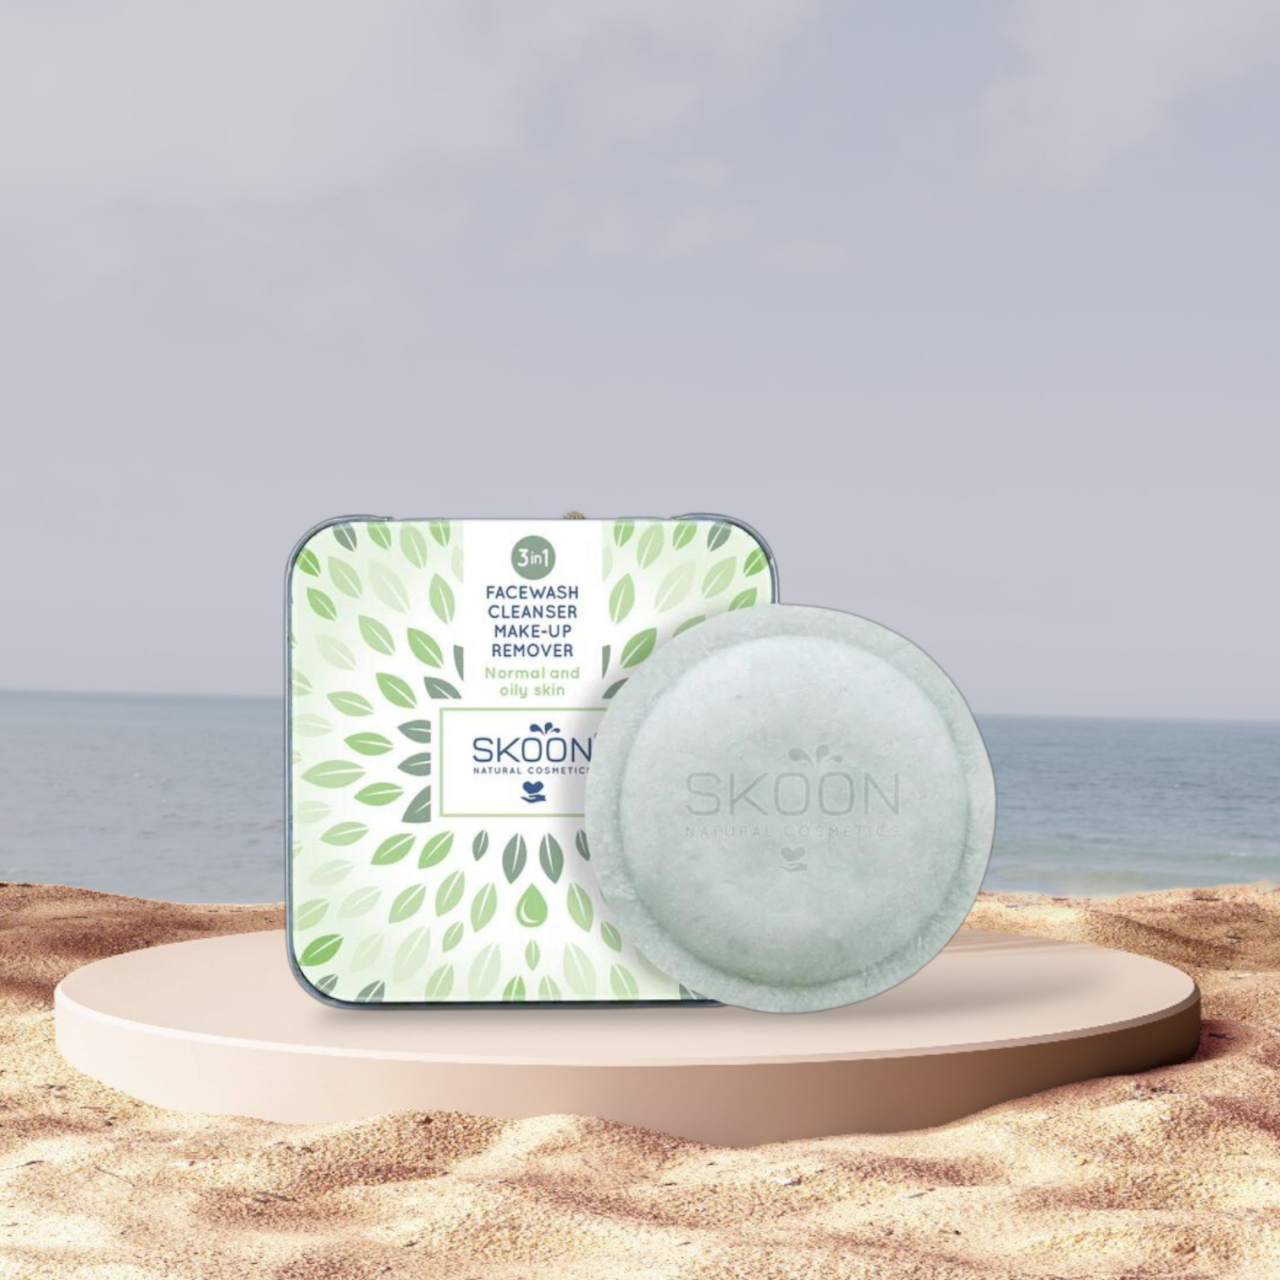 En naturlig Skoon Facewash, Cleanser og Makeup remover - Normal og fedtet hud, der sidder på et sand ved siden af havet, fremmer velvære.